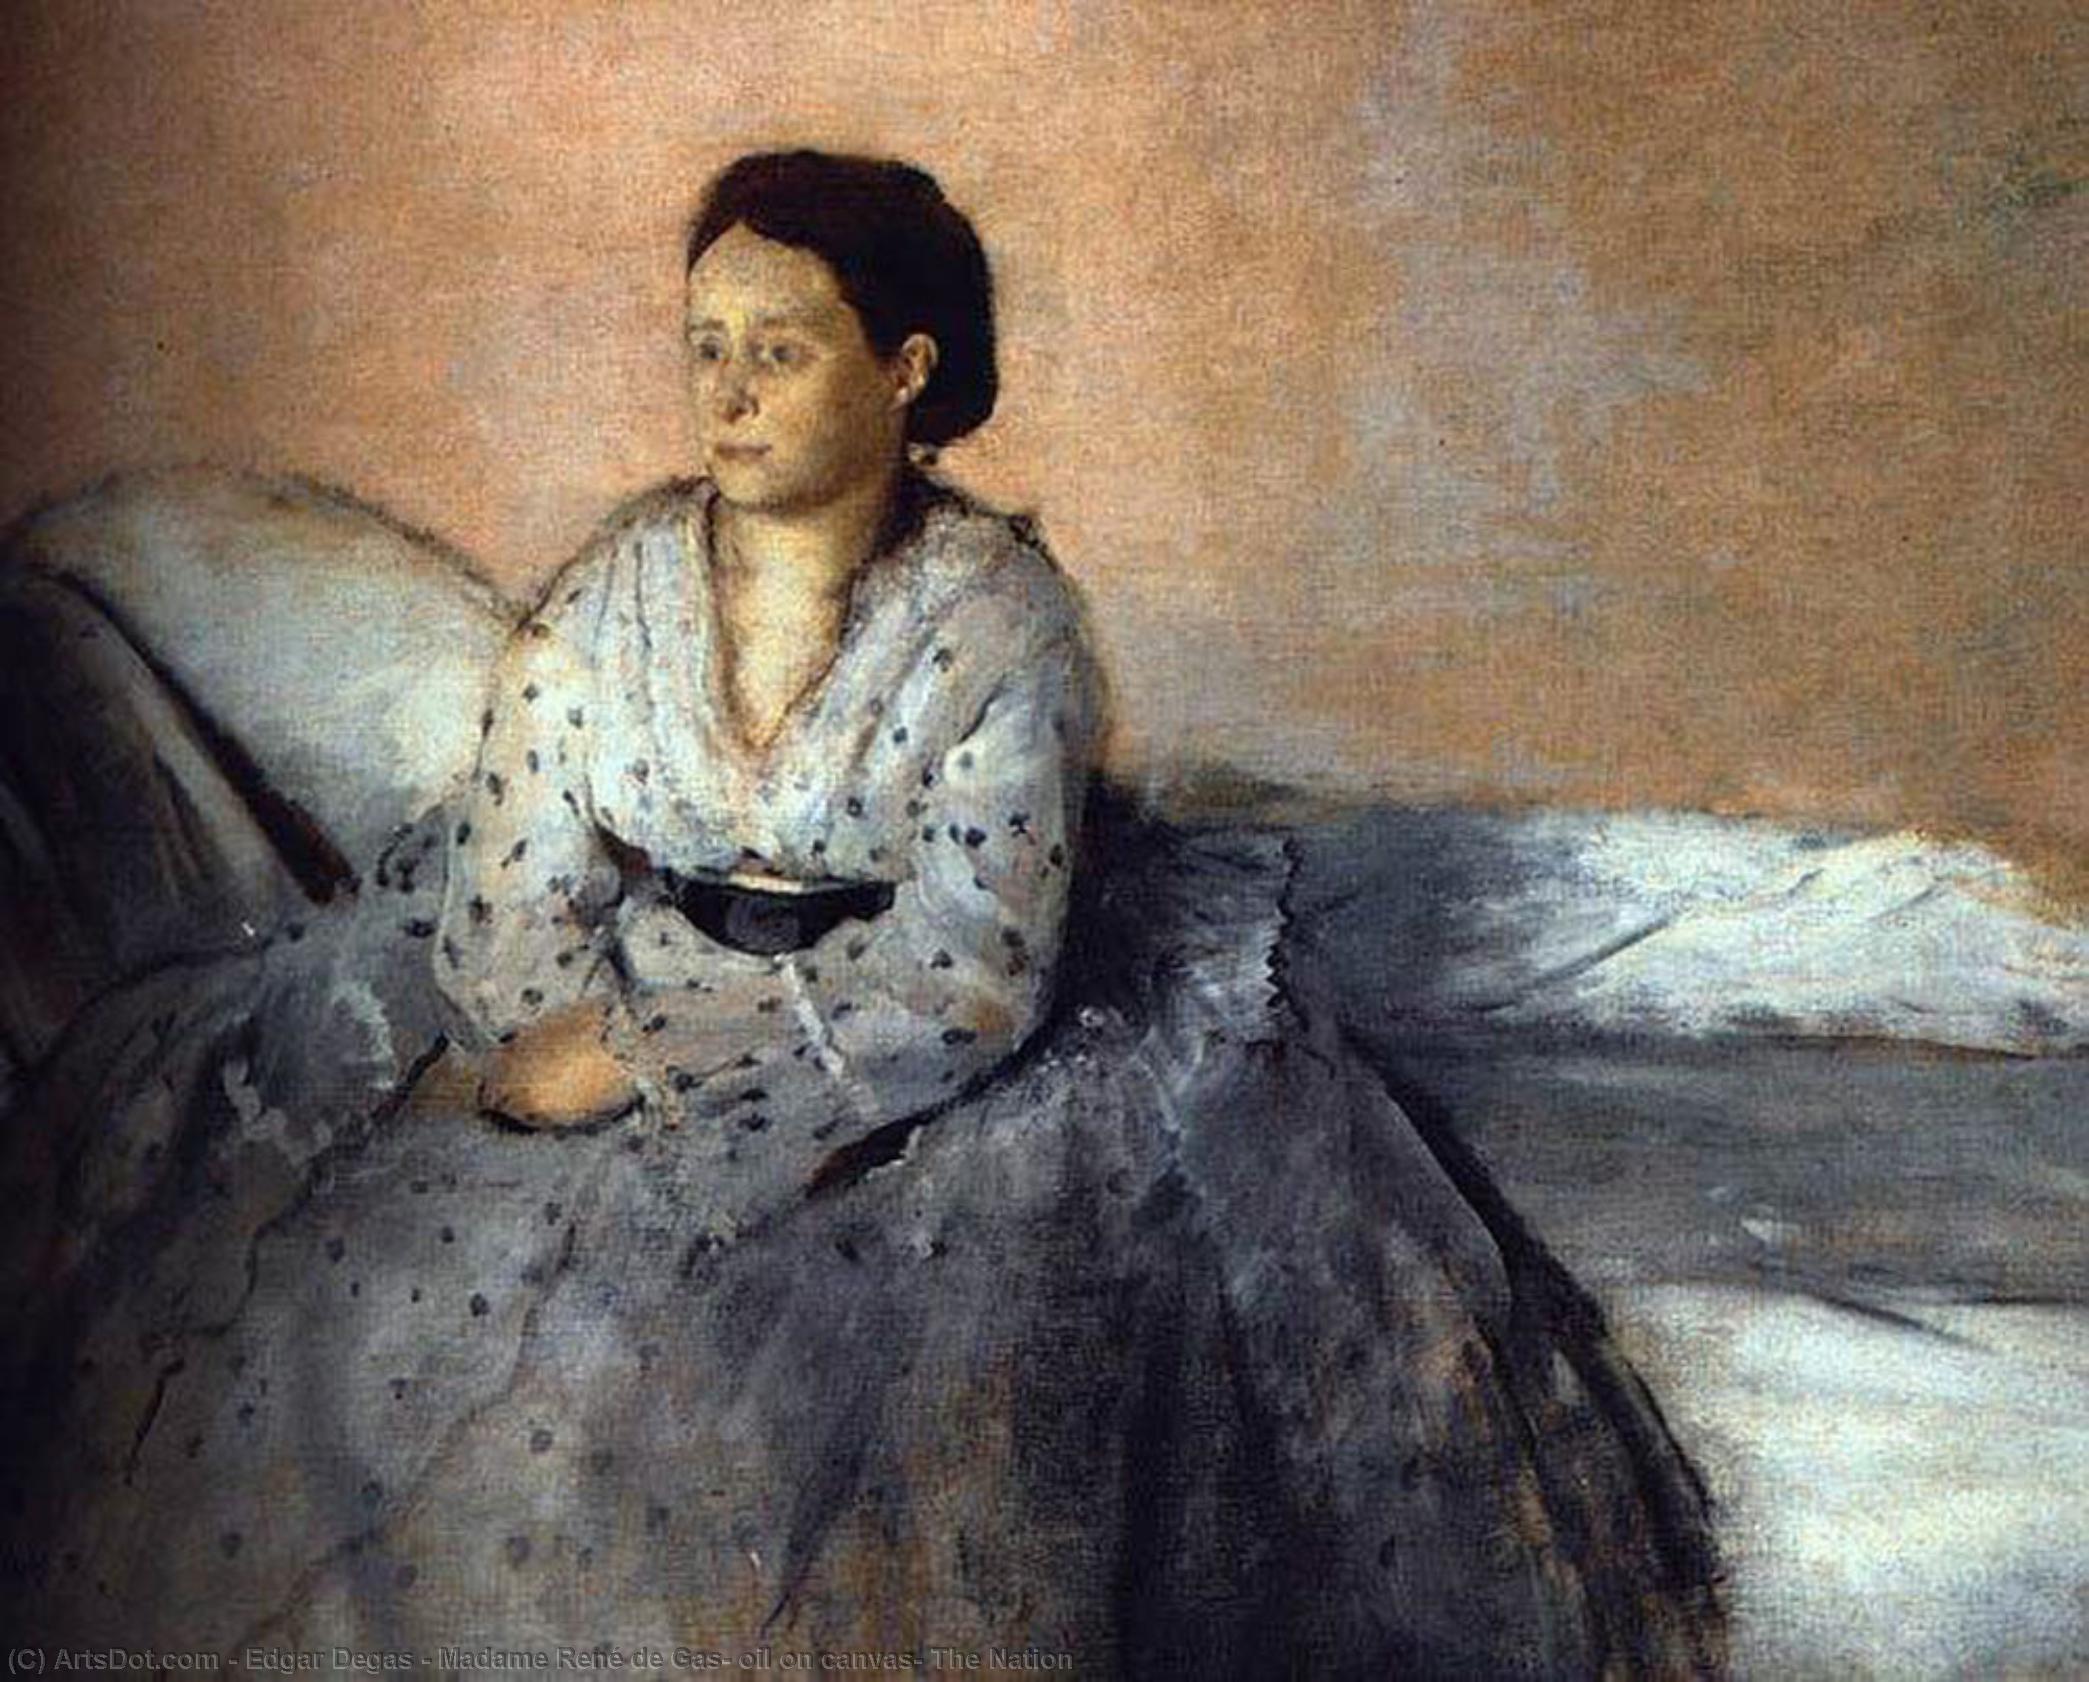 WikiOO.org - Encyclopedia of Fine Arts - Lukisan, Artwork Edgar Degas - Madame René de Gas, oil on canvas, The Nation